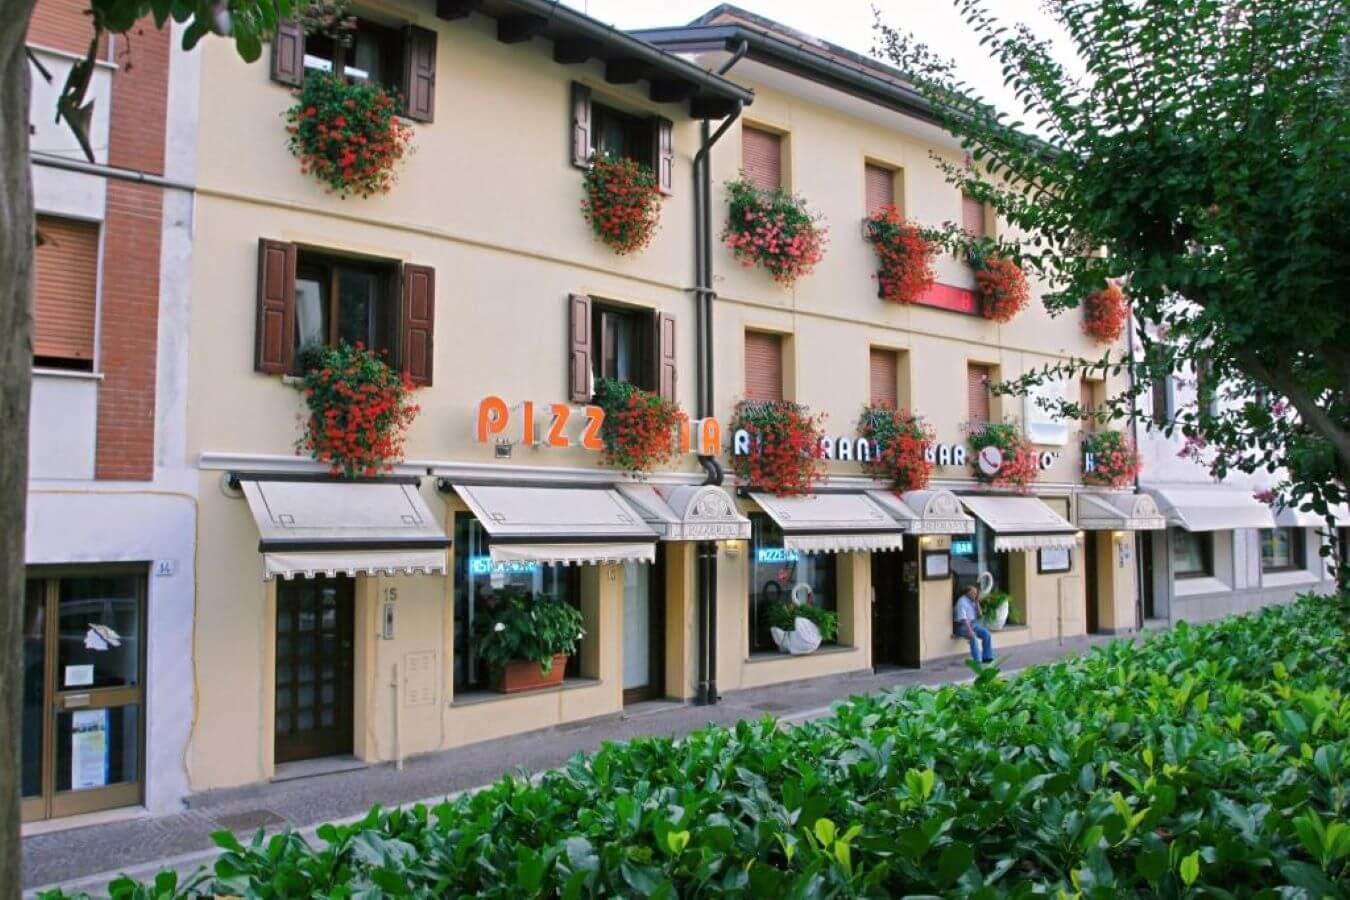 Hotel Cigno caso studio Smartpricing - testimonianza Raffaele